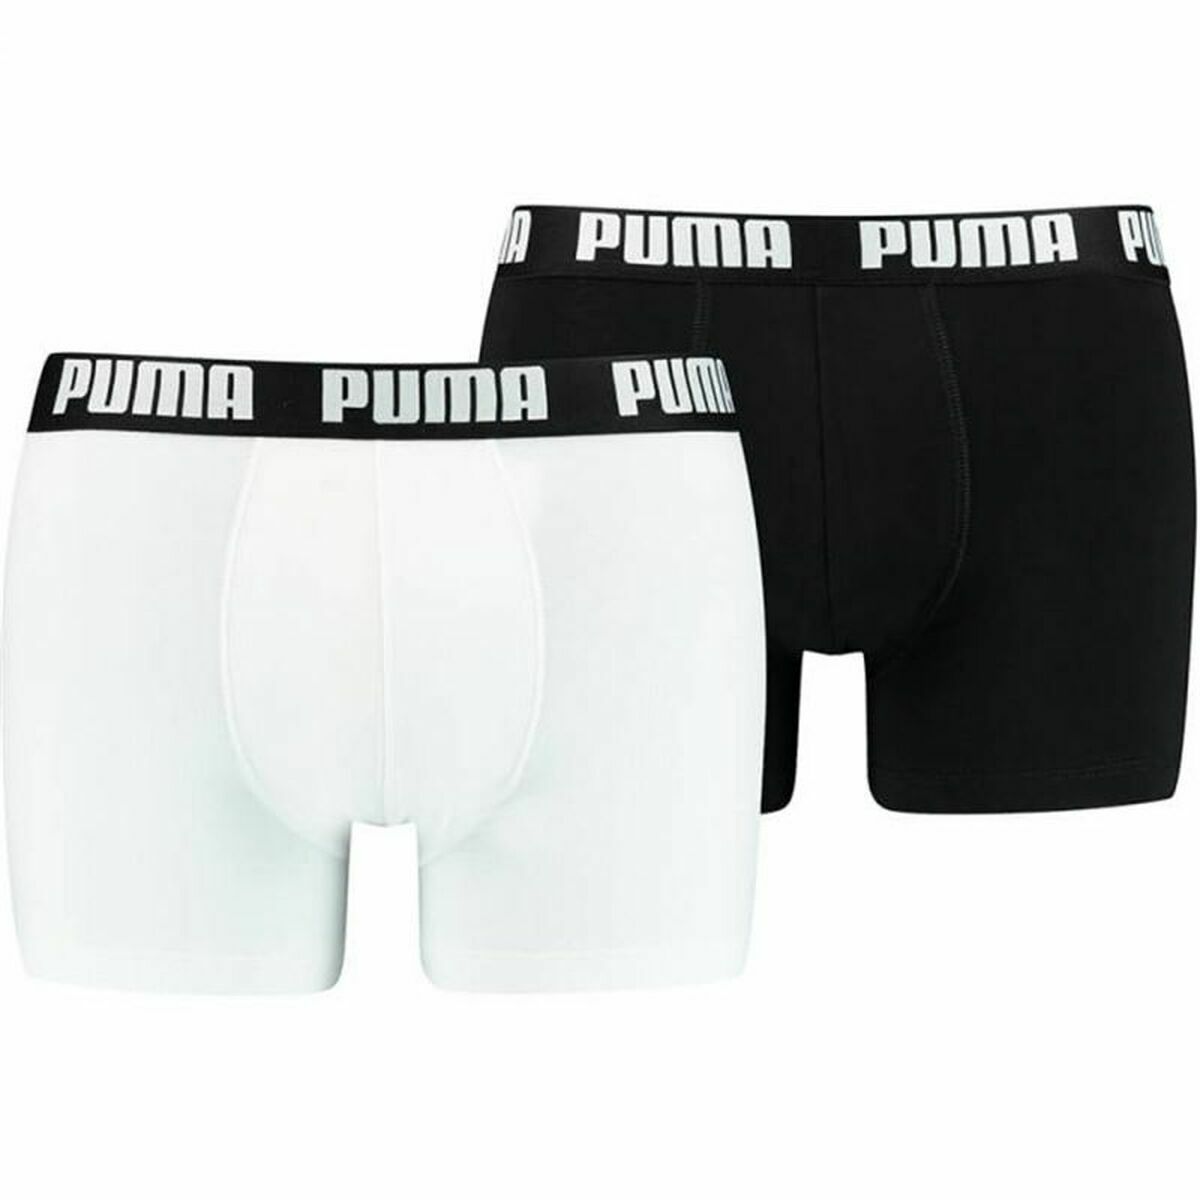 Miesten bokserit Puma Basic Musta Valkoinen, Koko XL